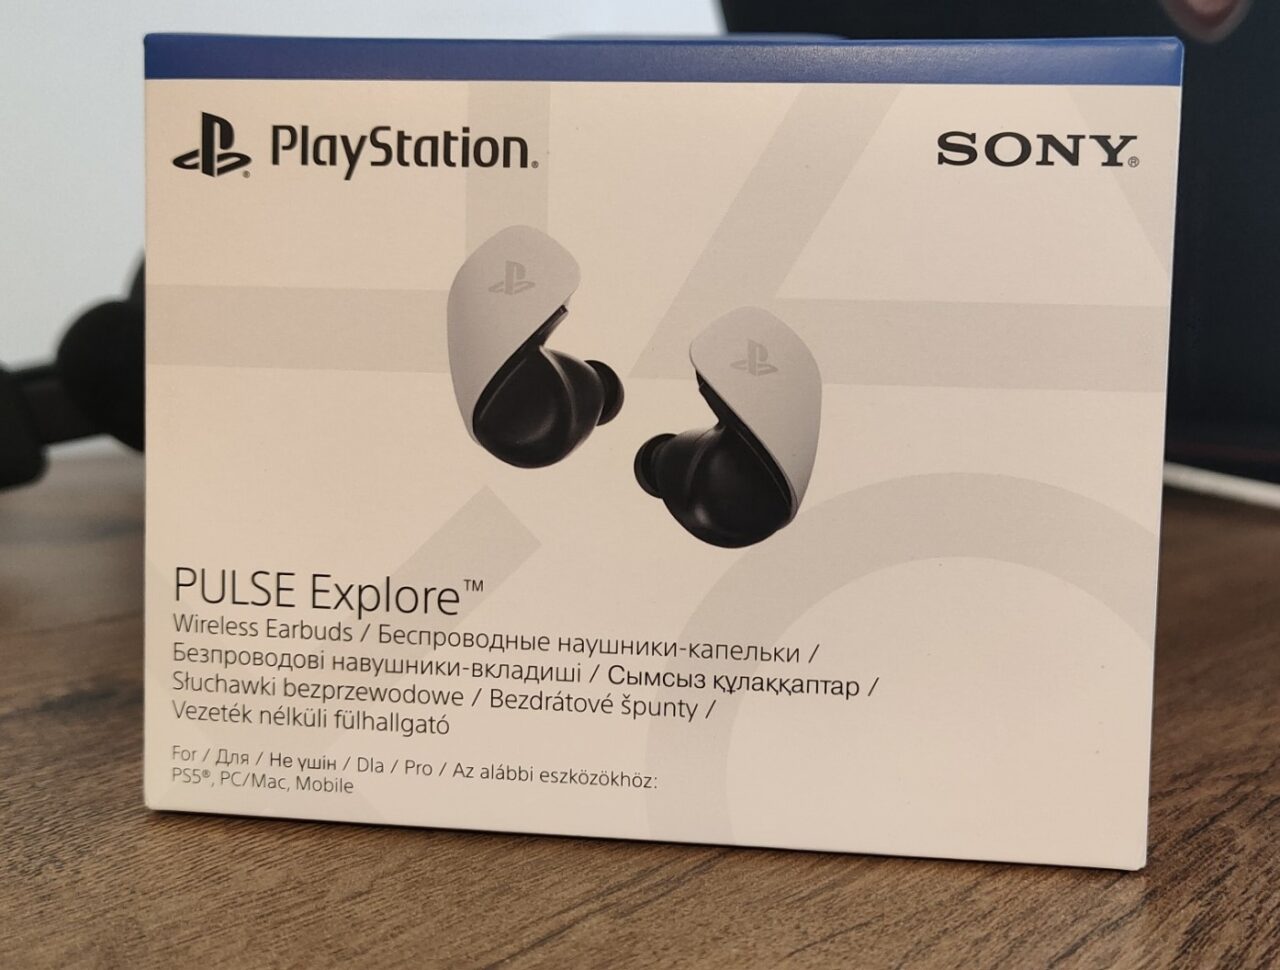 Pudełko słuchawek bezprzewodowych PlayStation Pulse Explore marki Sony PlayStation z logotypami PlayStation i Sony, kompatybilne z PS5, PC/Mac oraz urządzeniami mobilnymi.